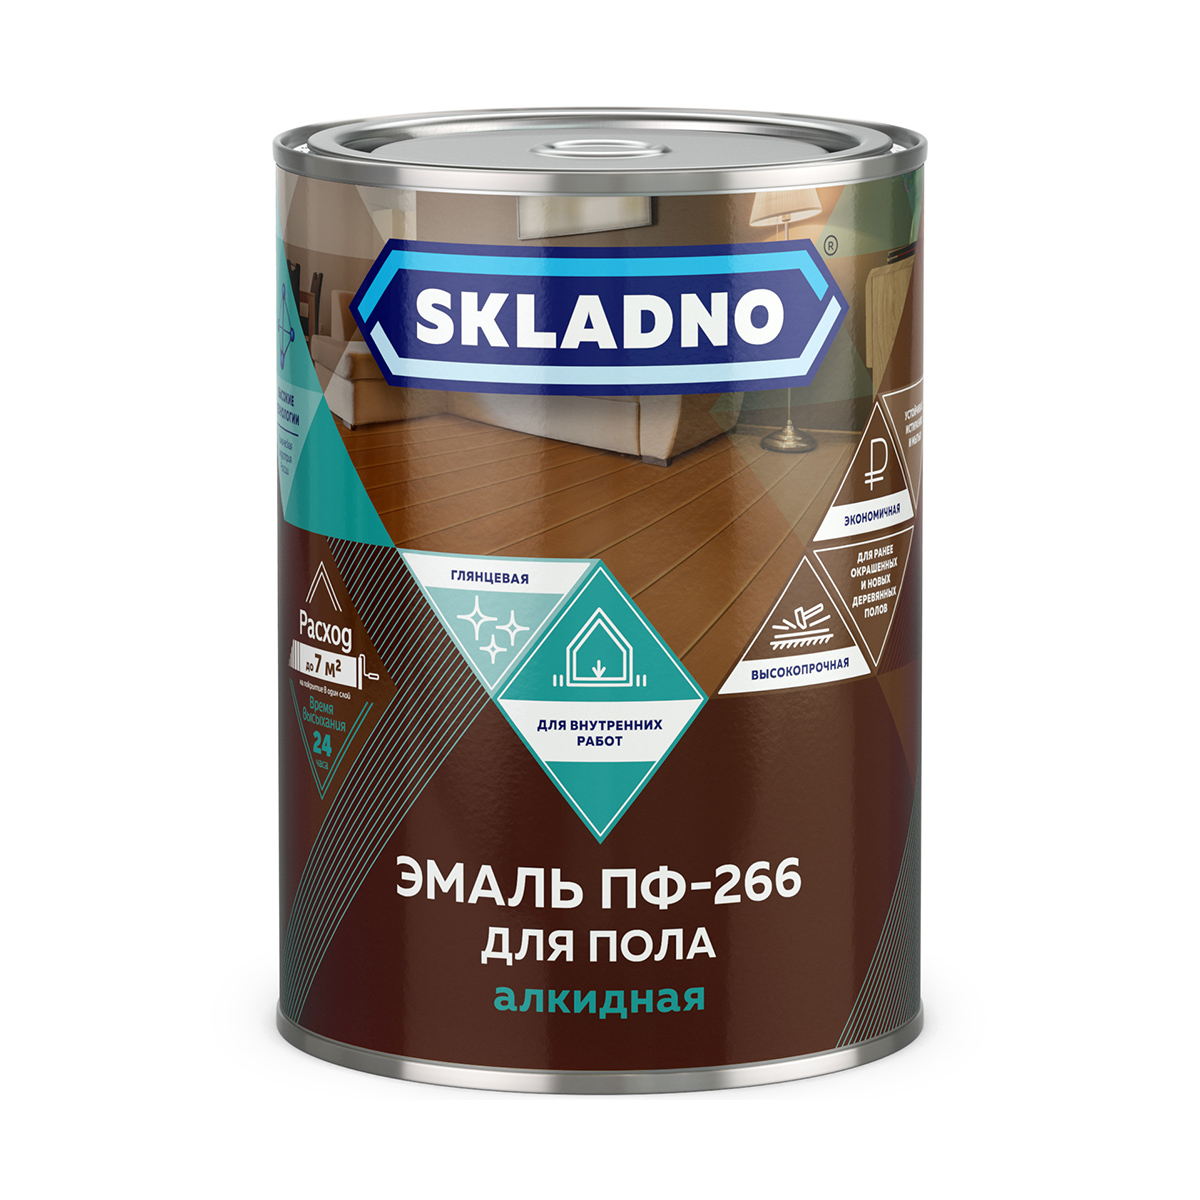 Эмаль ПФ-266 для пола Skladno, алкидная, глянцевая, 2,6 кг, золотисто-коричневая эмаль фаворит пф 266 золотисто коричневая 0 9 кг 77221